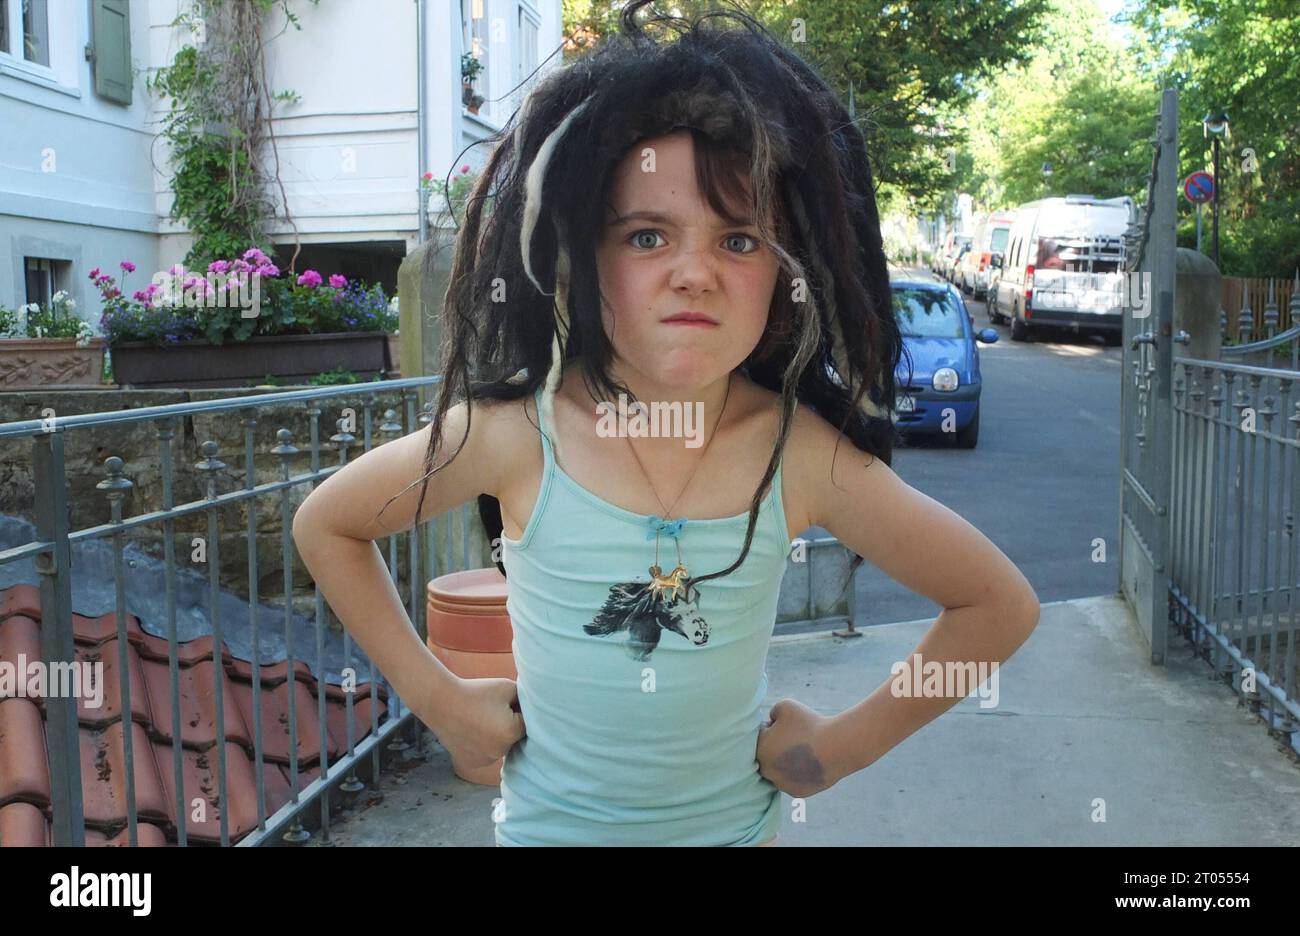 Rasta Kind mit Rastafrisur *** Rasta enfant avec coiffure rasta Copyright : xRayxvanxZeschaux Banque D'Images